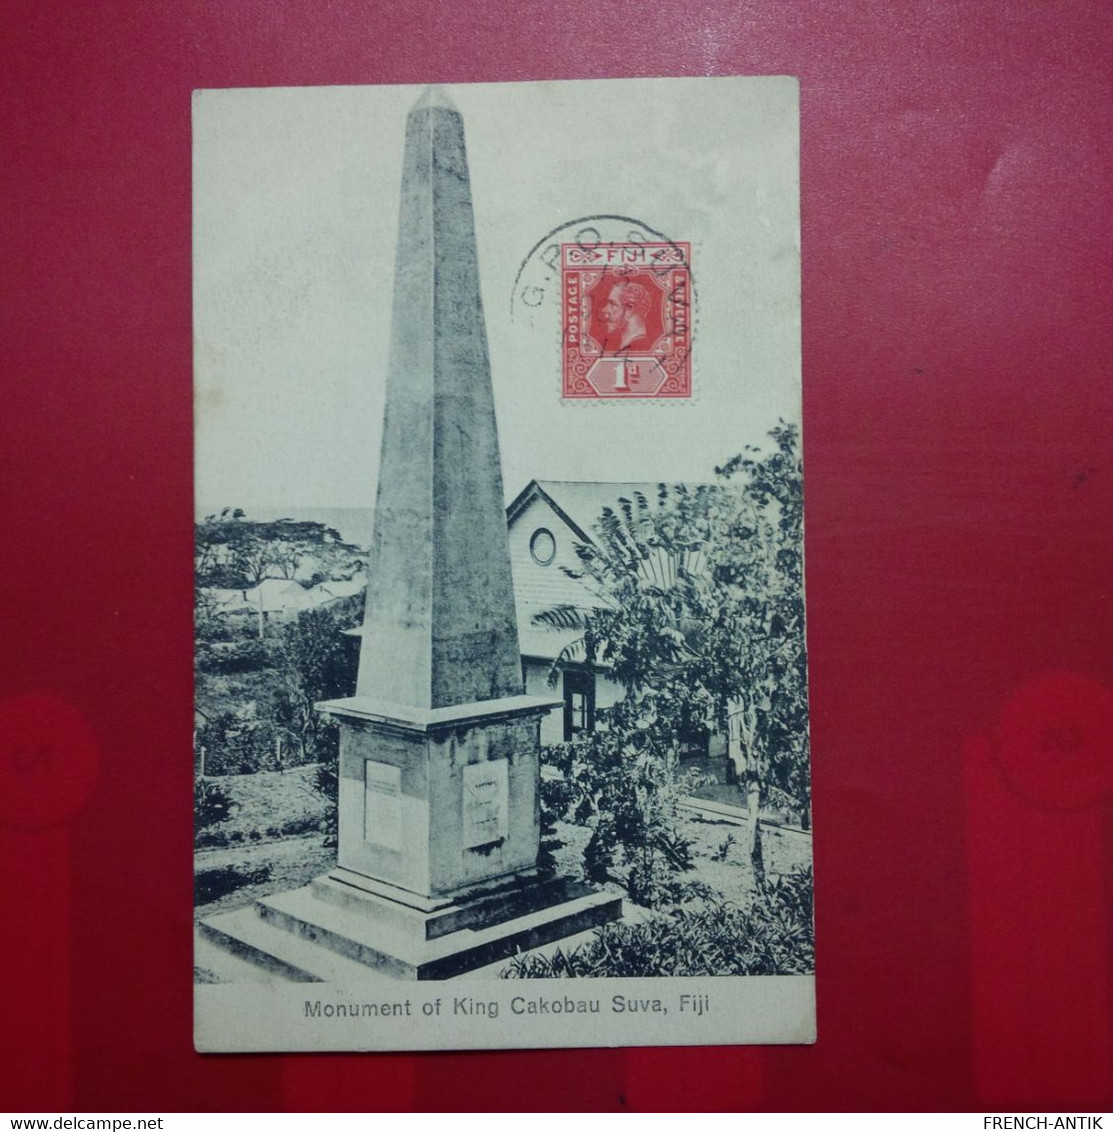 FIDJI FIJI MONUMENT OF KING CAKOBAU SUVA - Fidji